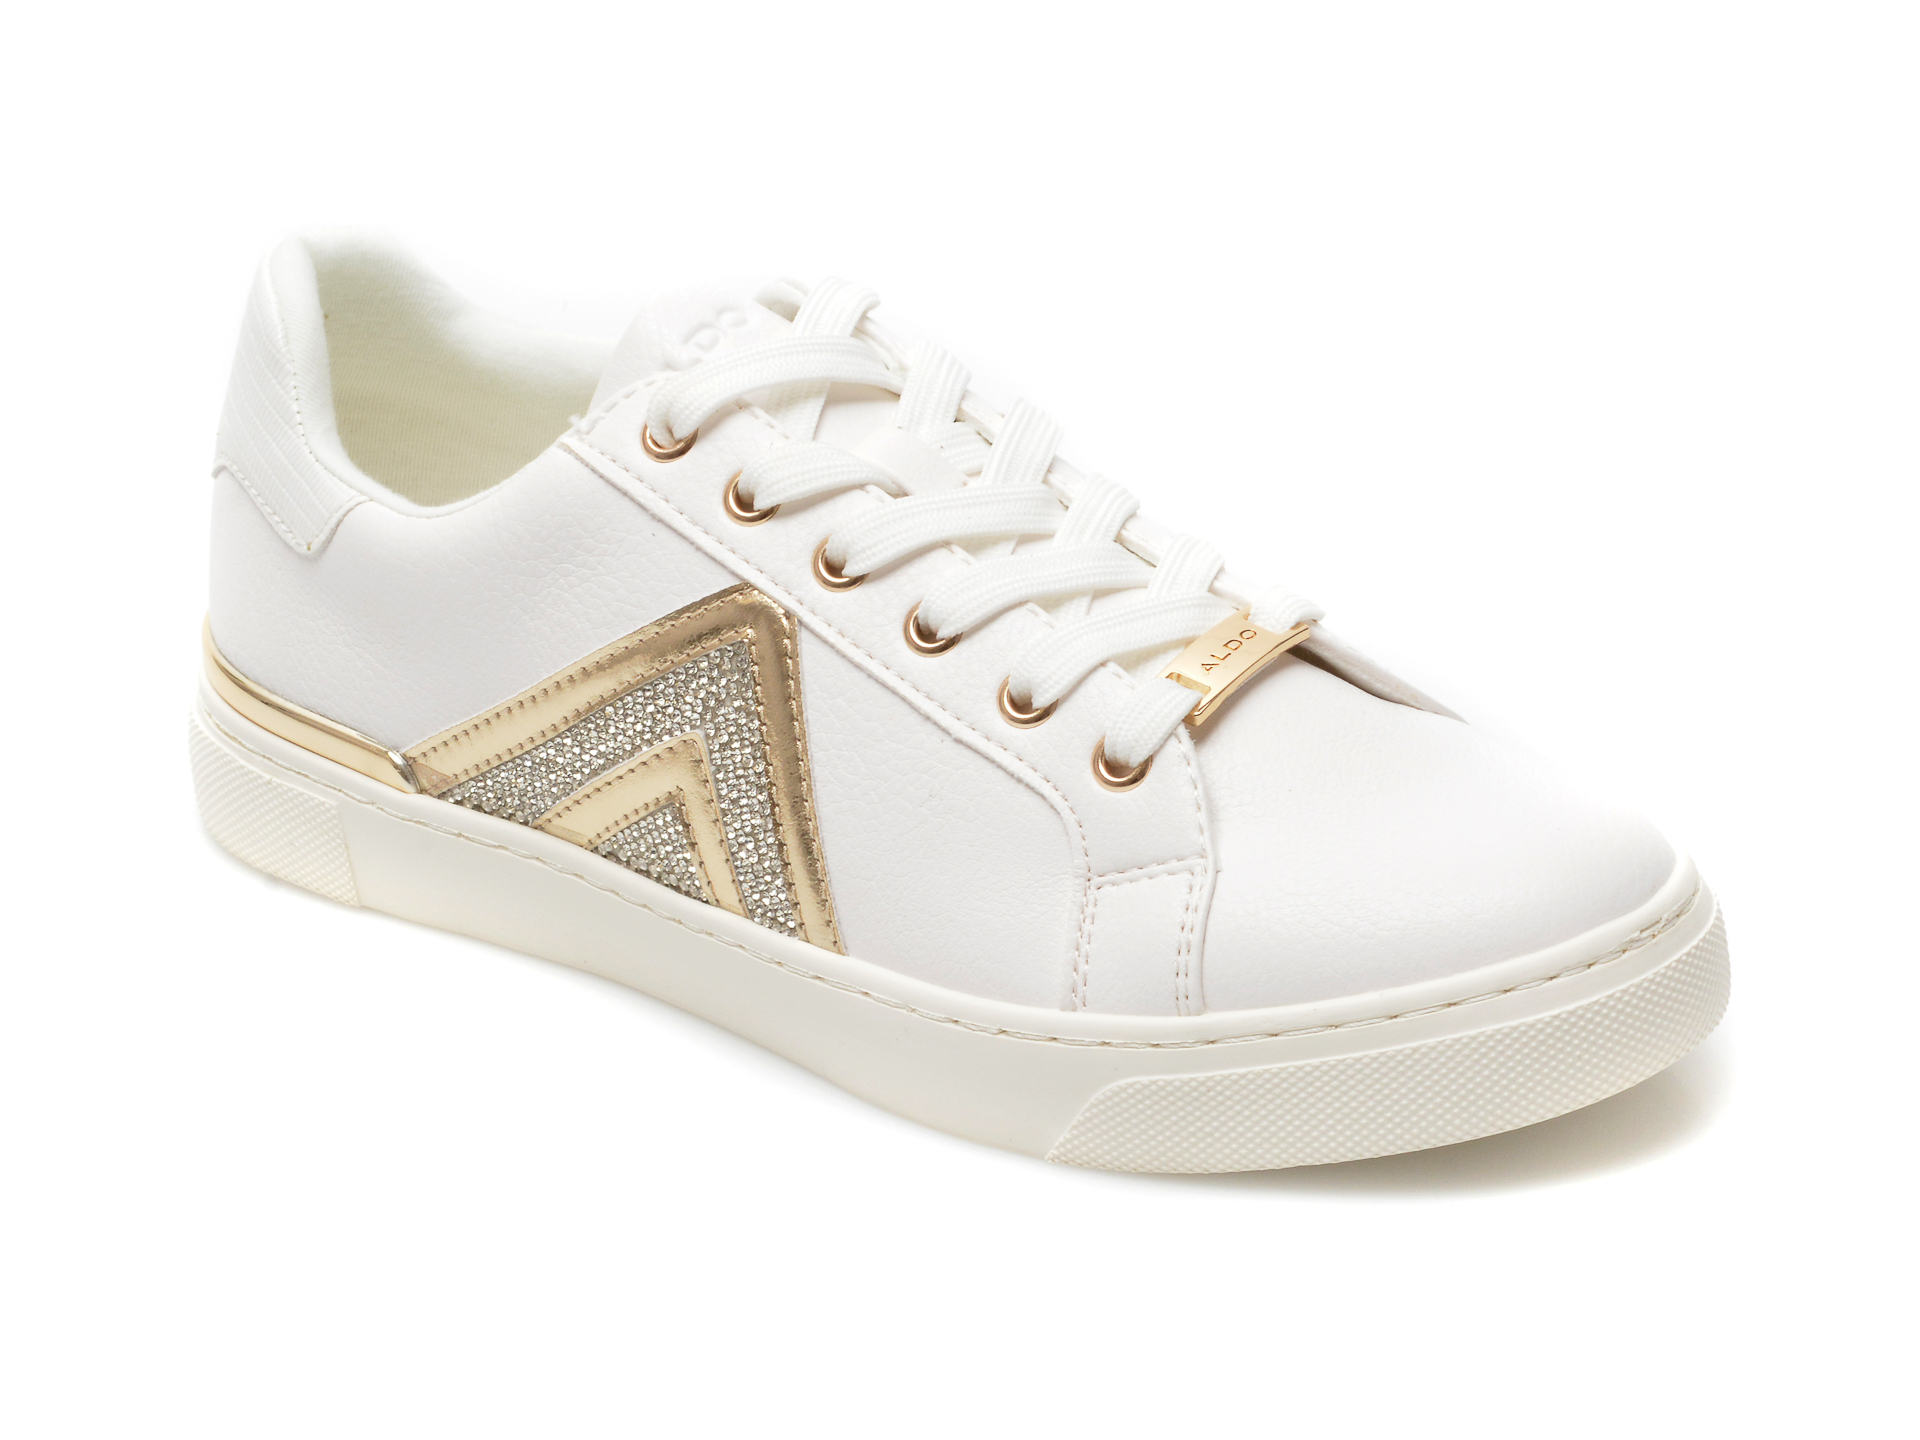 Pantofi sport ALDO albi, FRAN100, din piele ecologica Aldo imagine reduceri